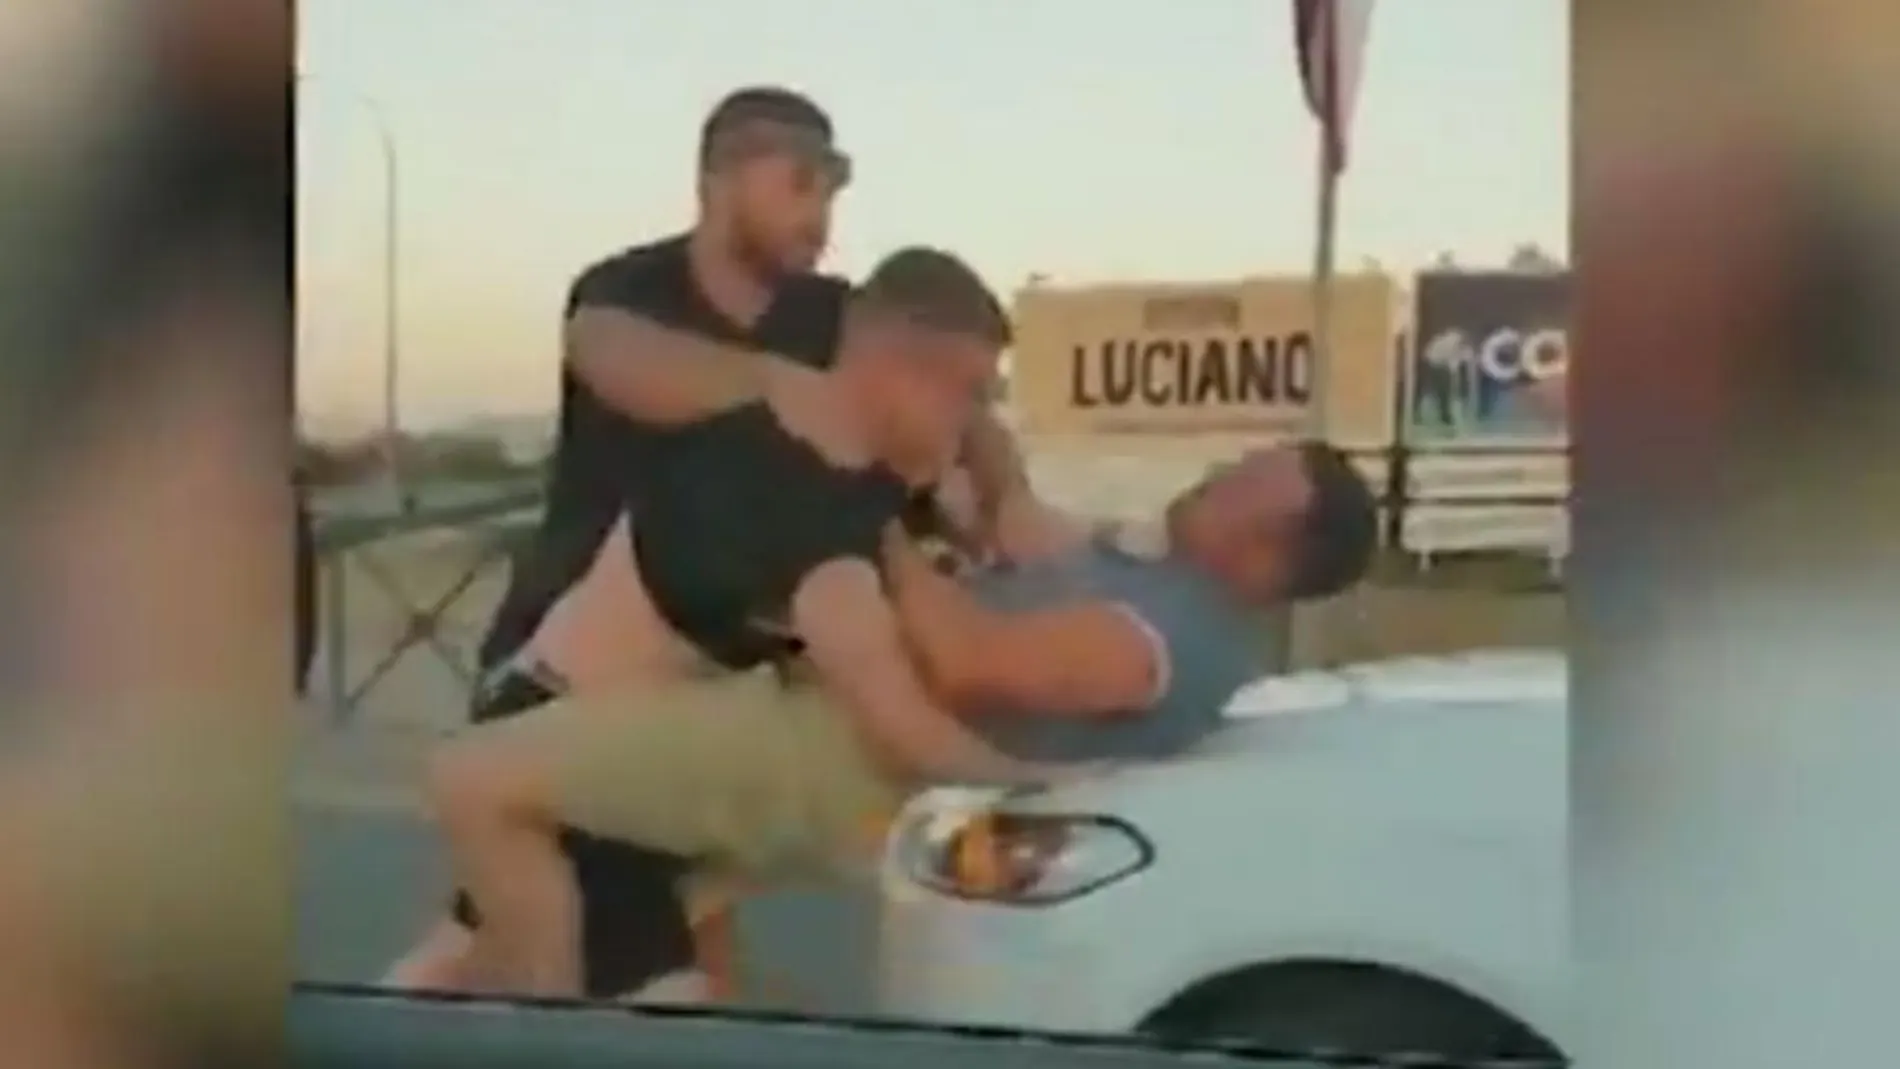 Captura del momento de la pelea entre los turistas ingleses en San Antonio (Ibiza) / Twitter